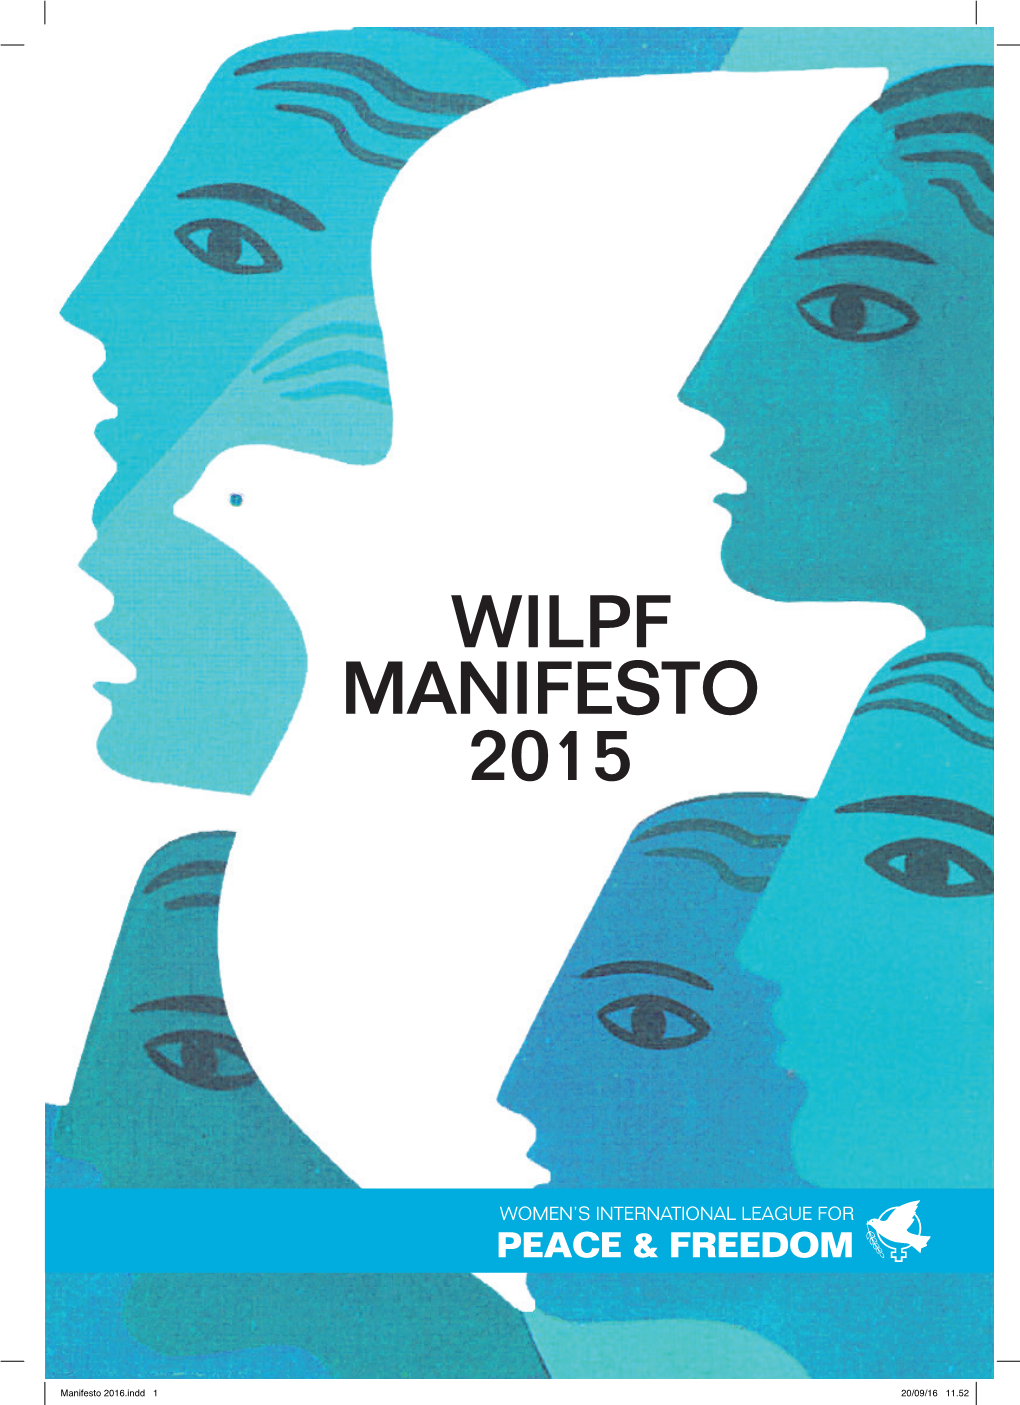 Wilpf Manifesto 2015